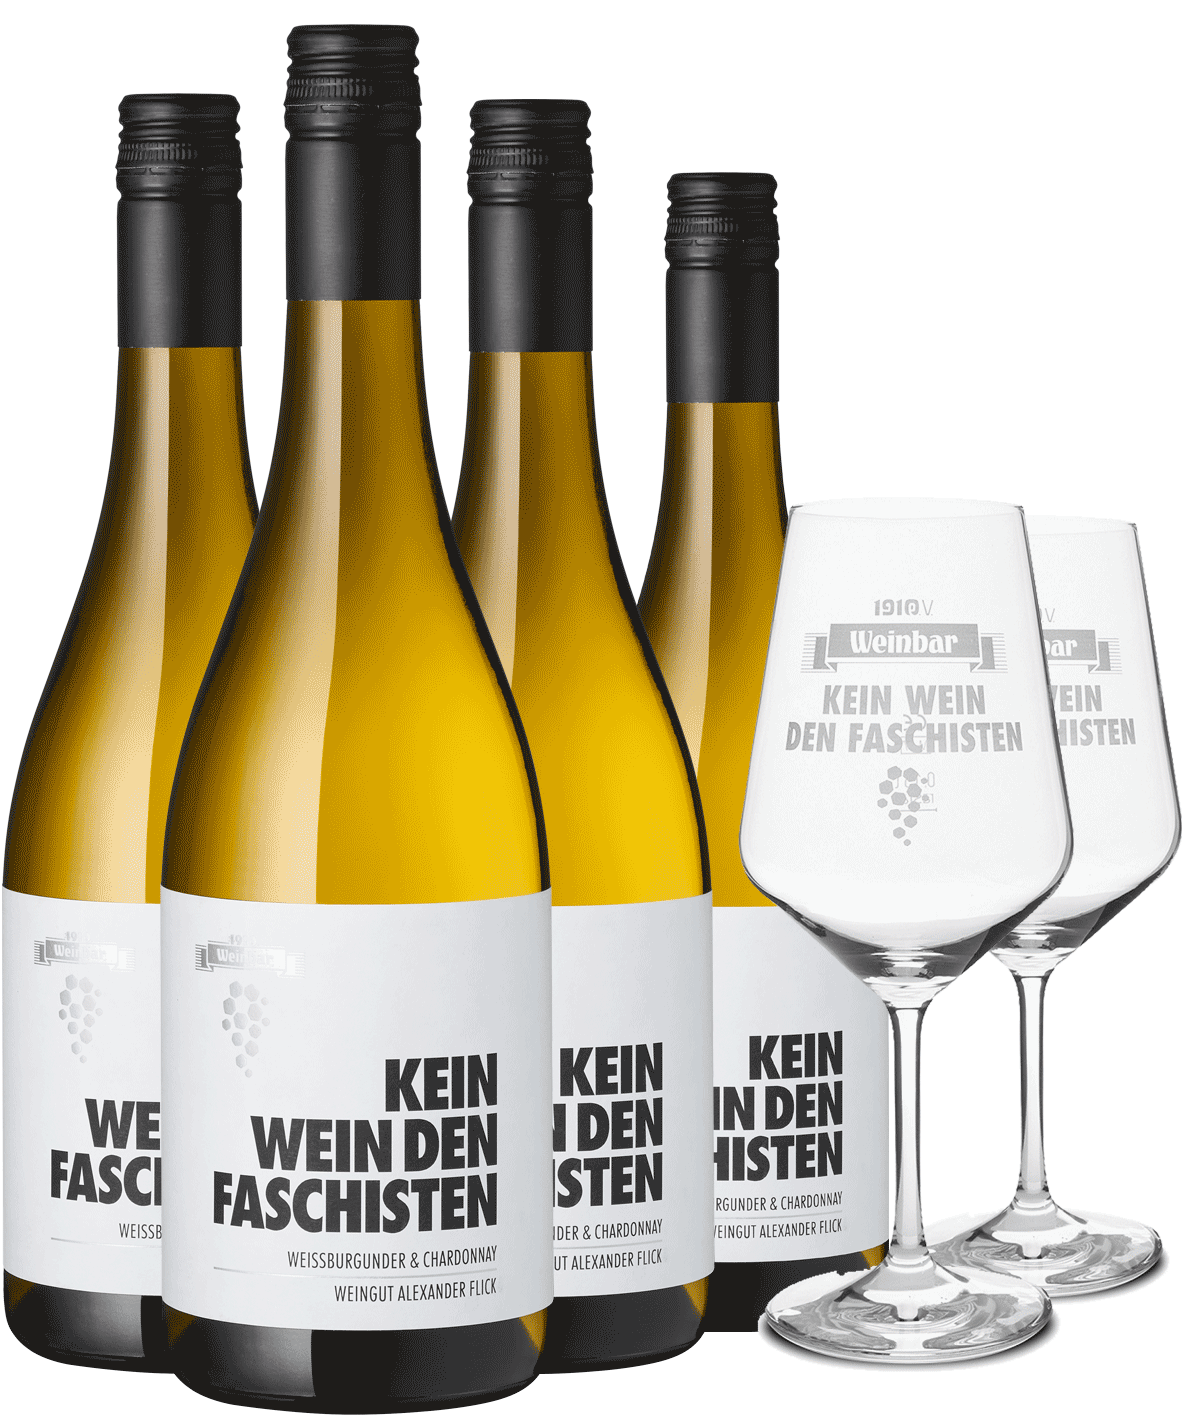 4er Paket "Kein Wein den Faschisten" Weißburgunder & Chardonnay + Gläser